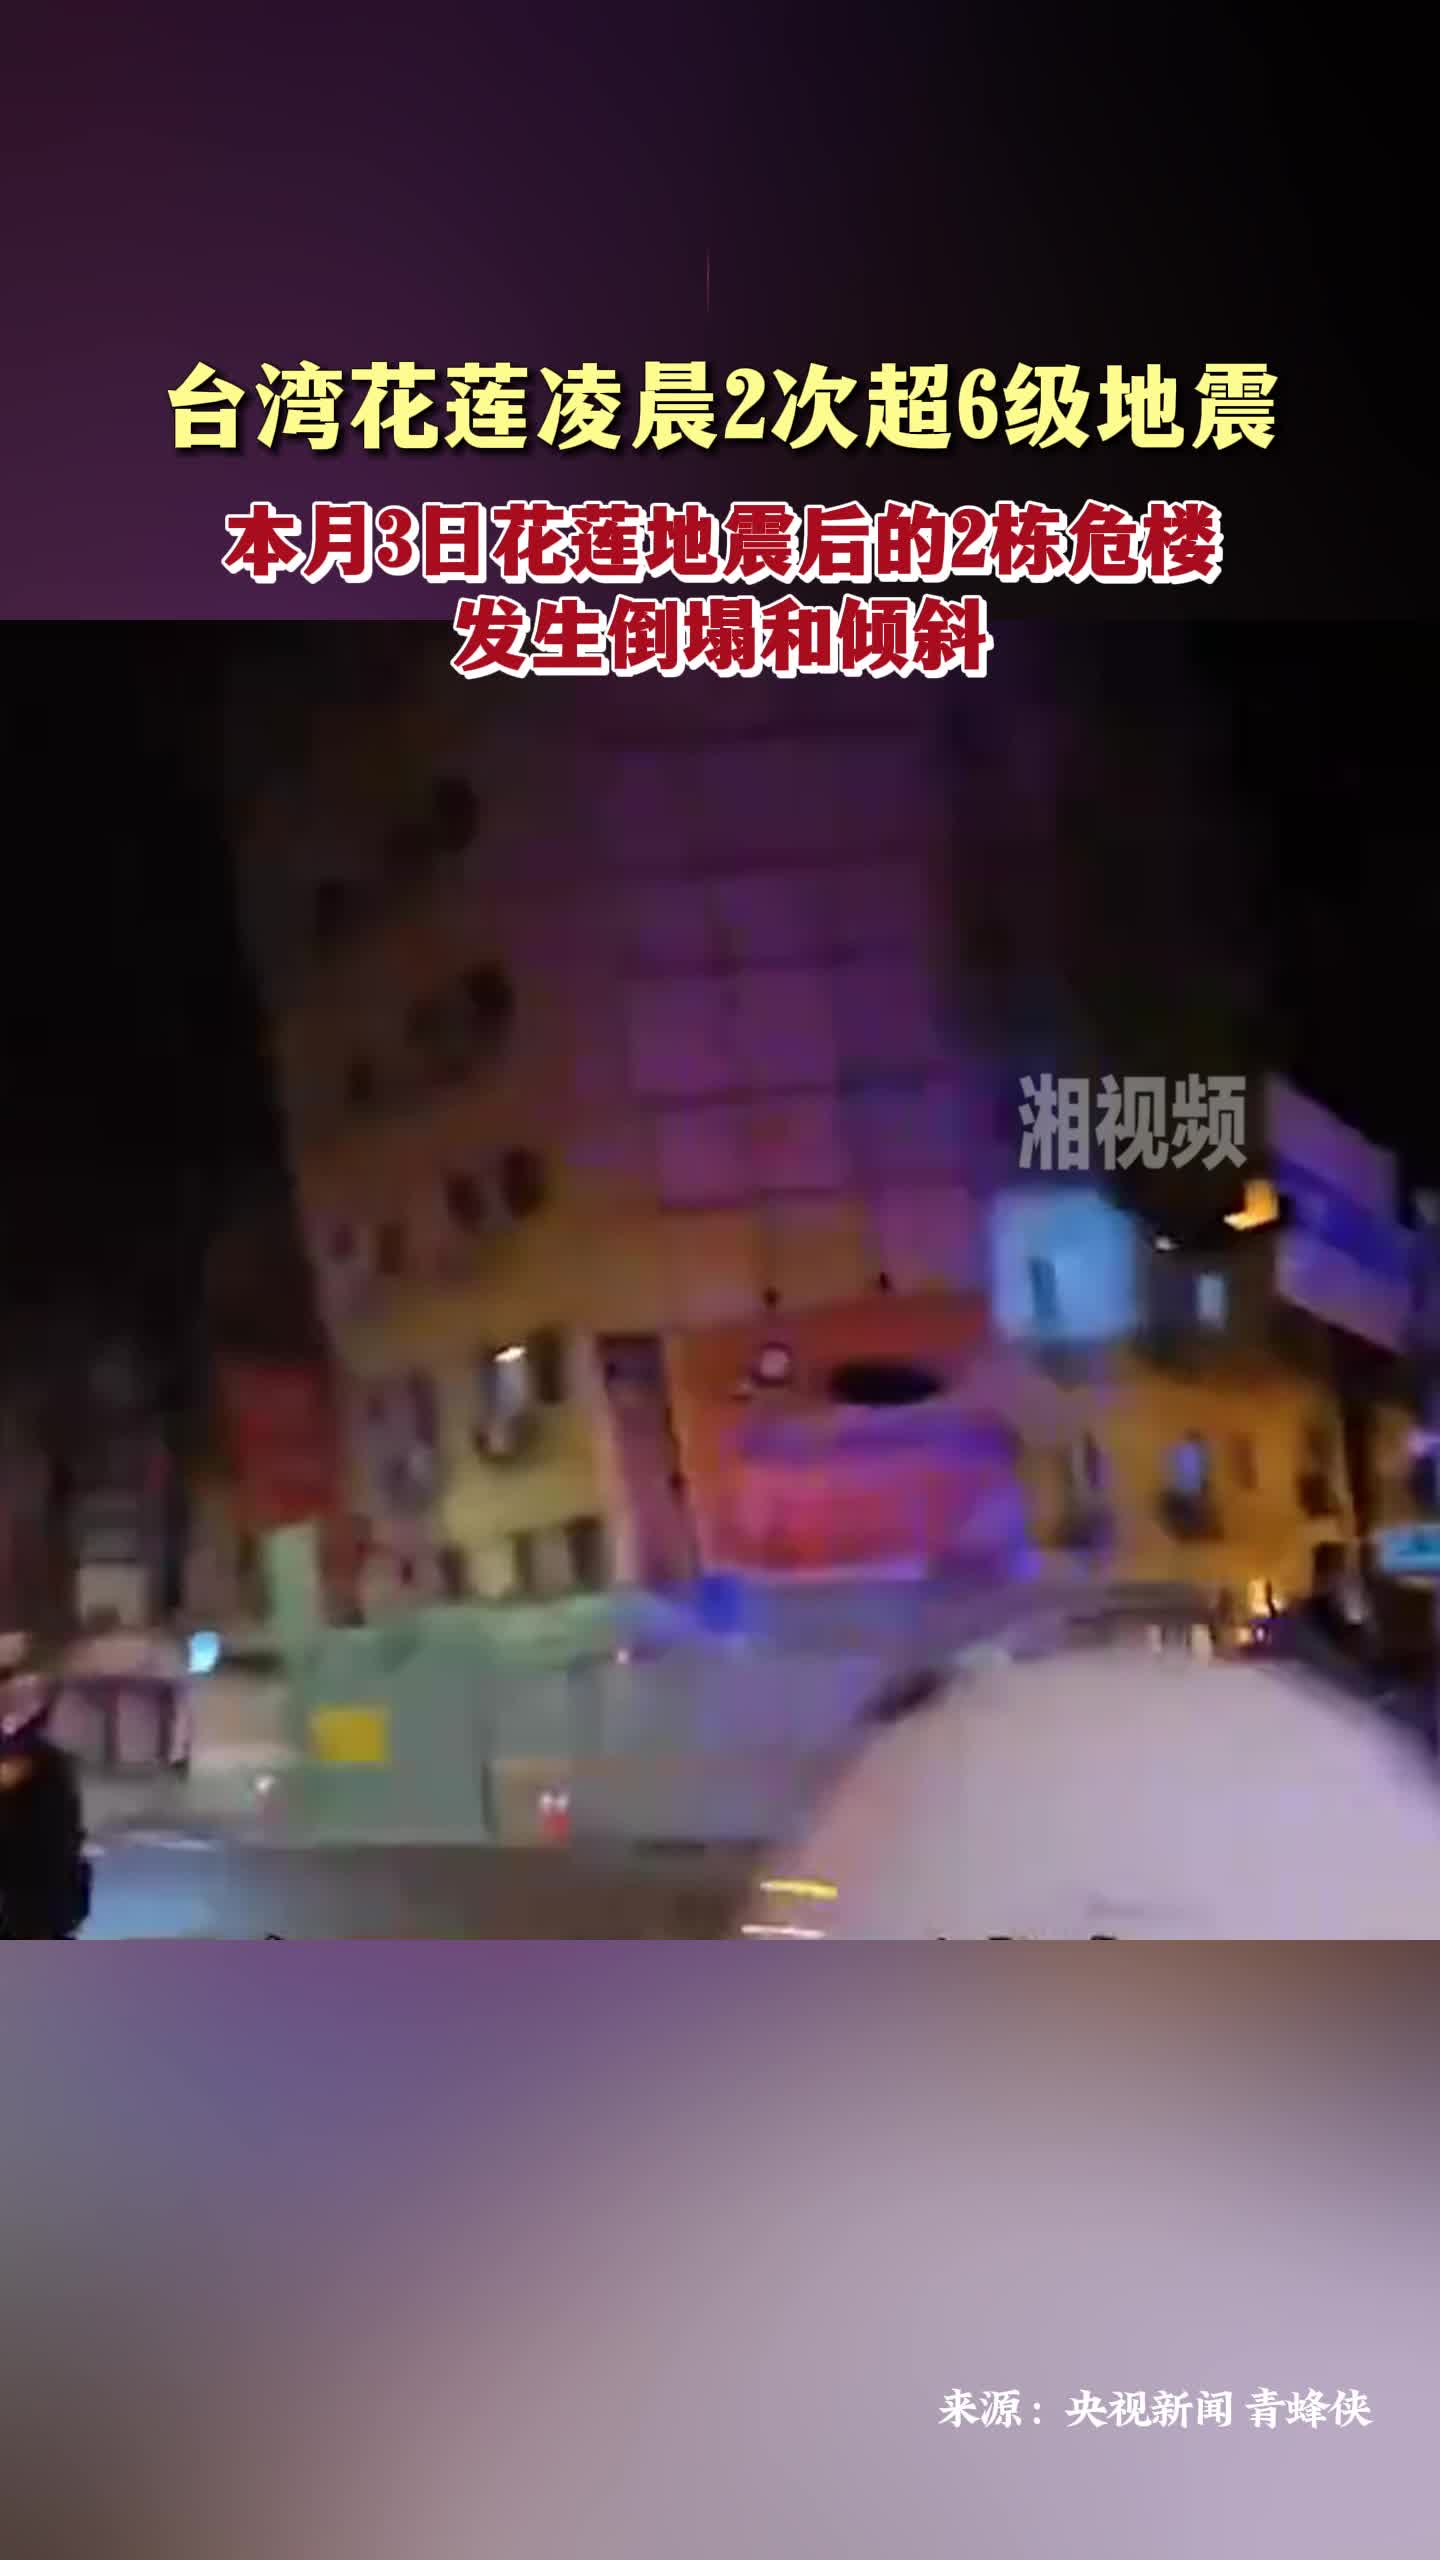 台湾花莲凌晨2次超6级地震